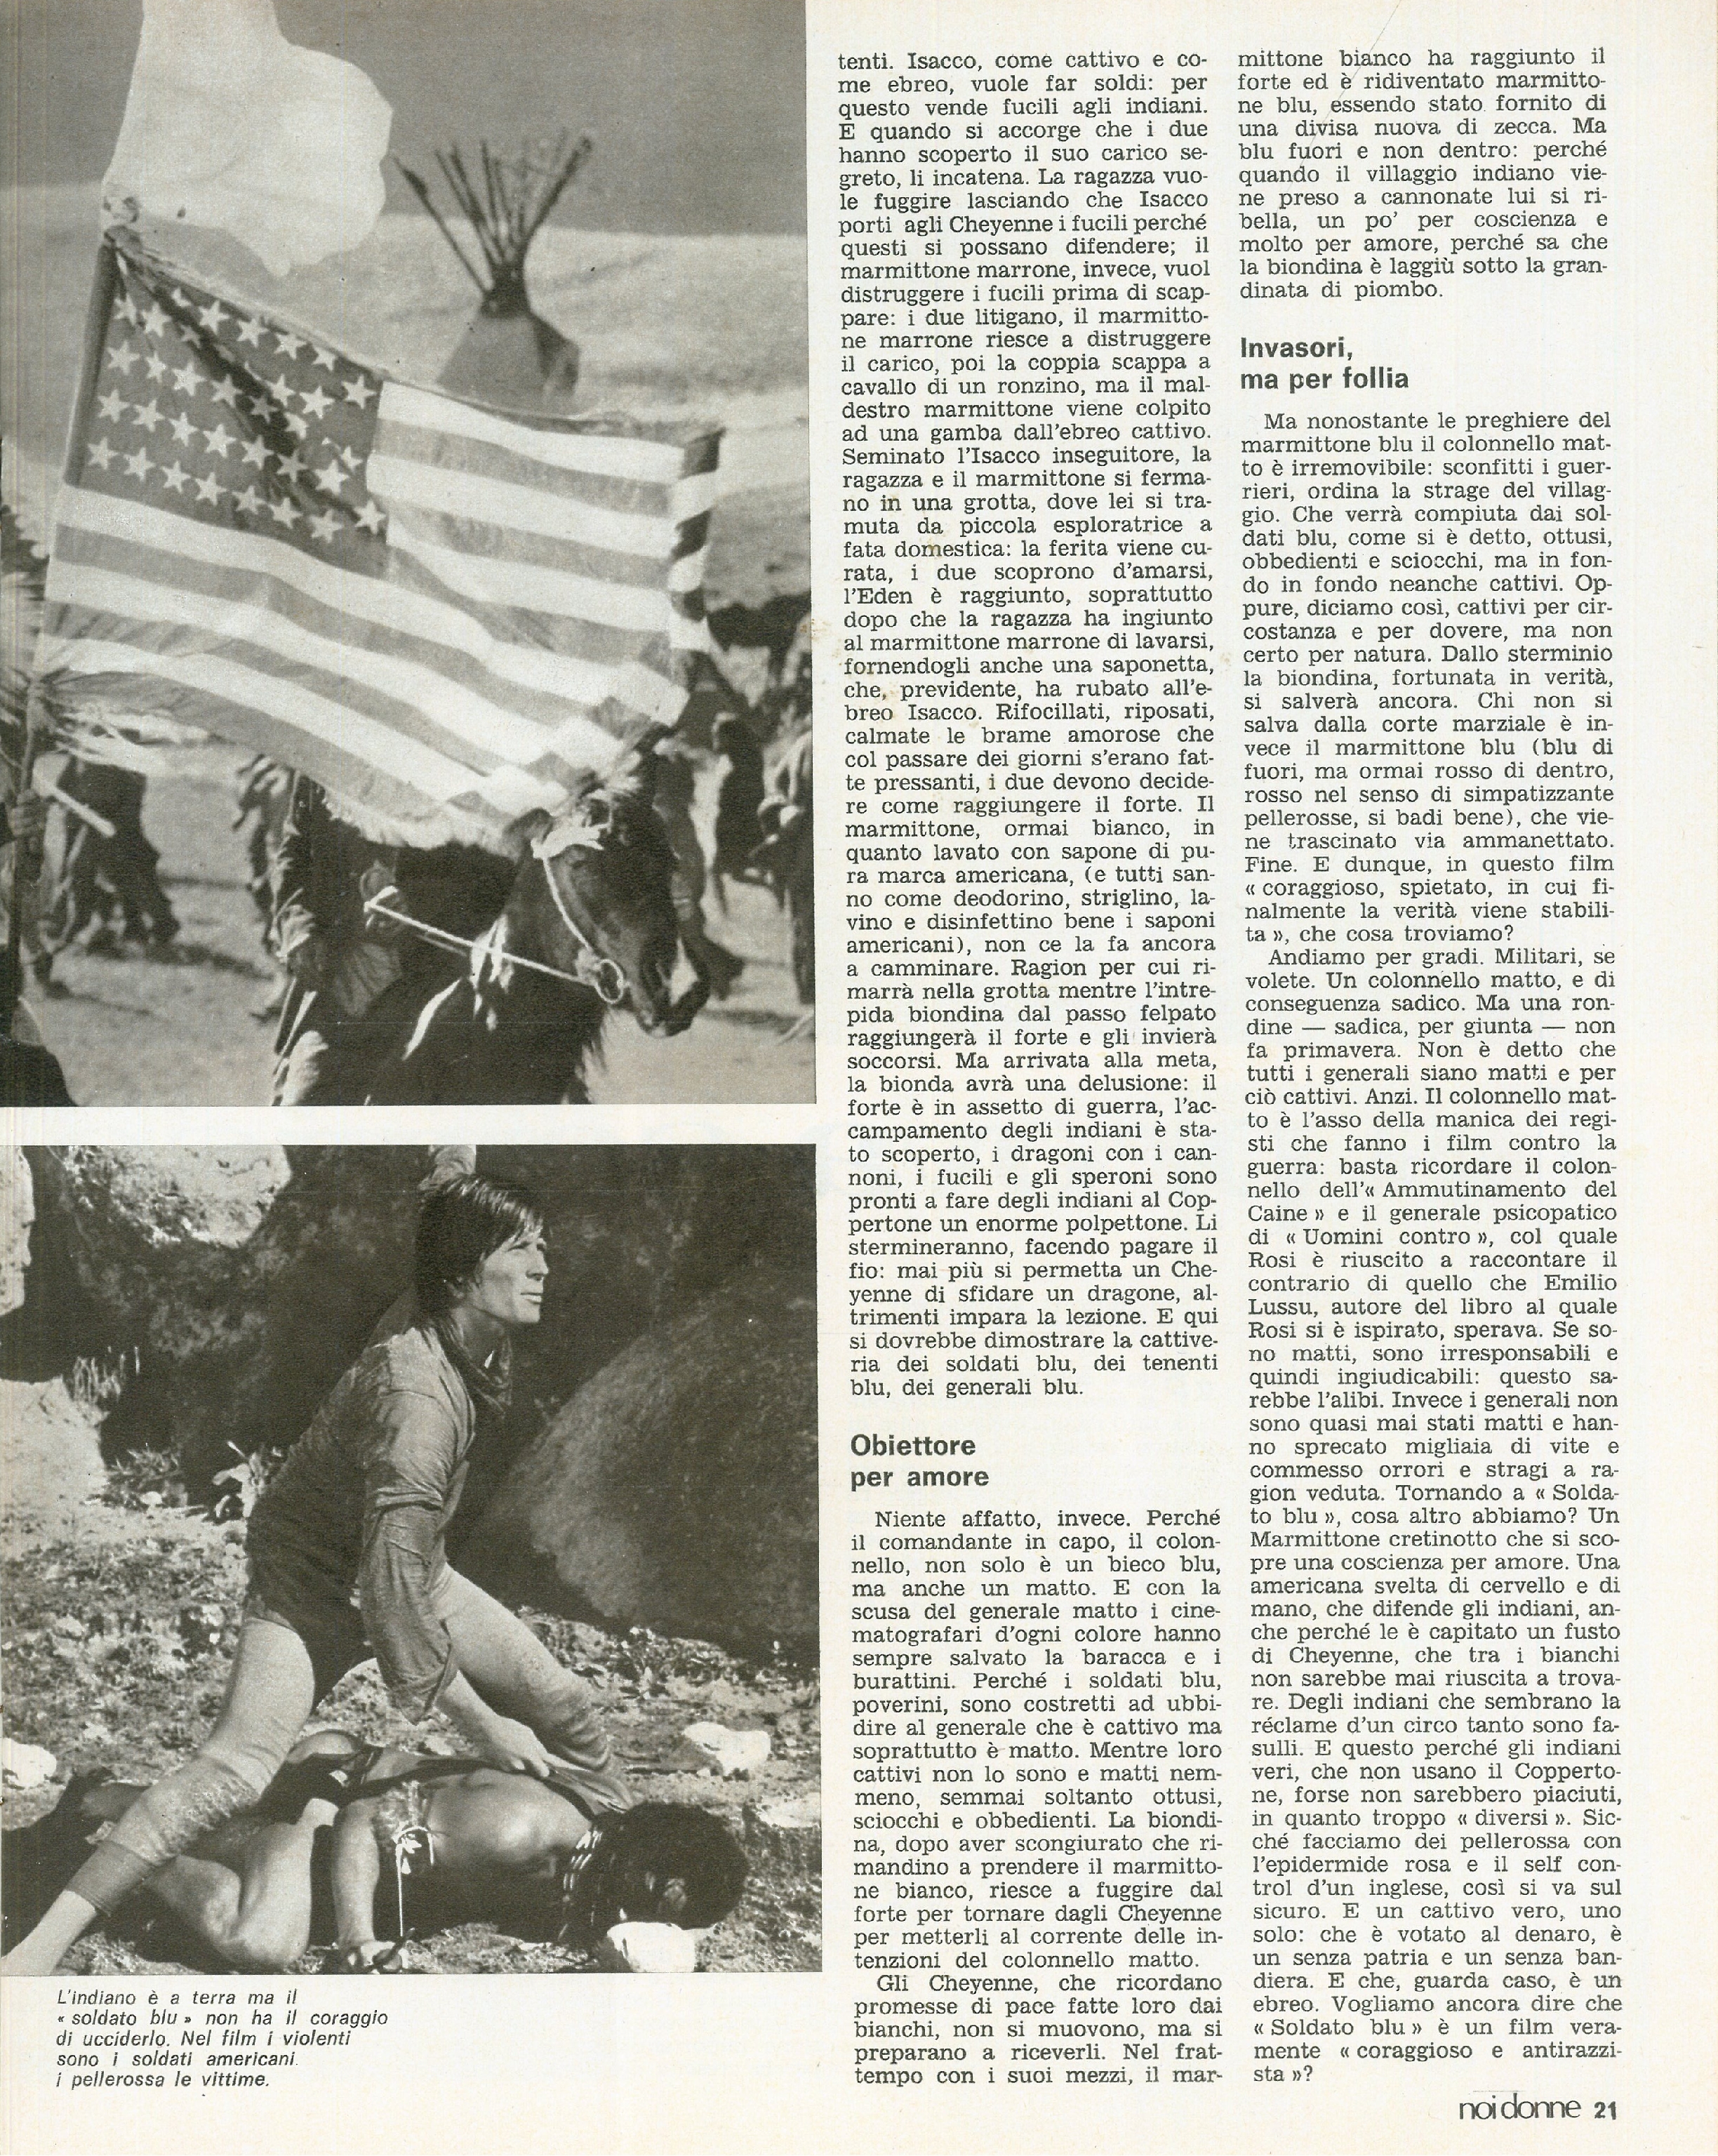 Foto: Le operaie protagoniste dell’unificazione dei sindacati; Cina, a venti anni dalla rivoluzione; Jane Fonda arrestata; Il Negus in Italia